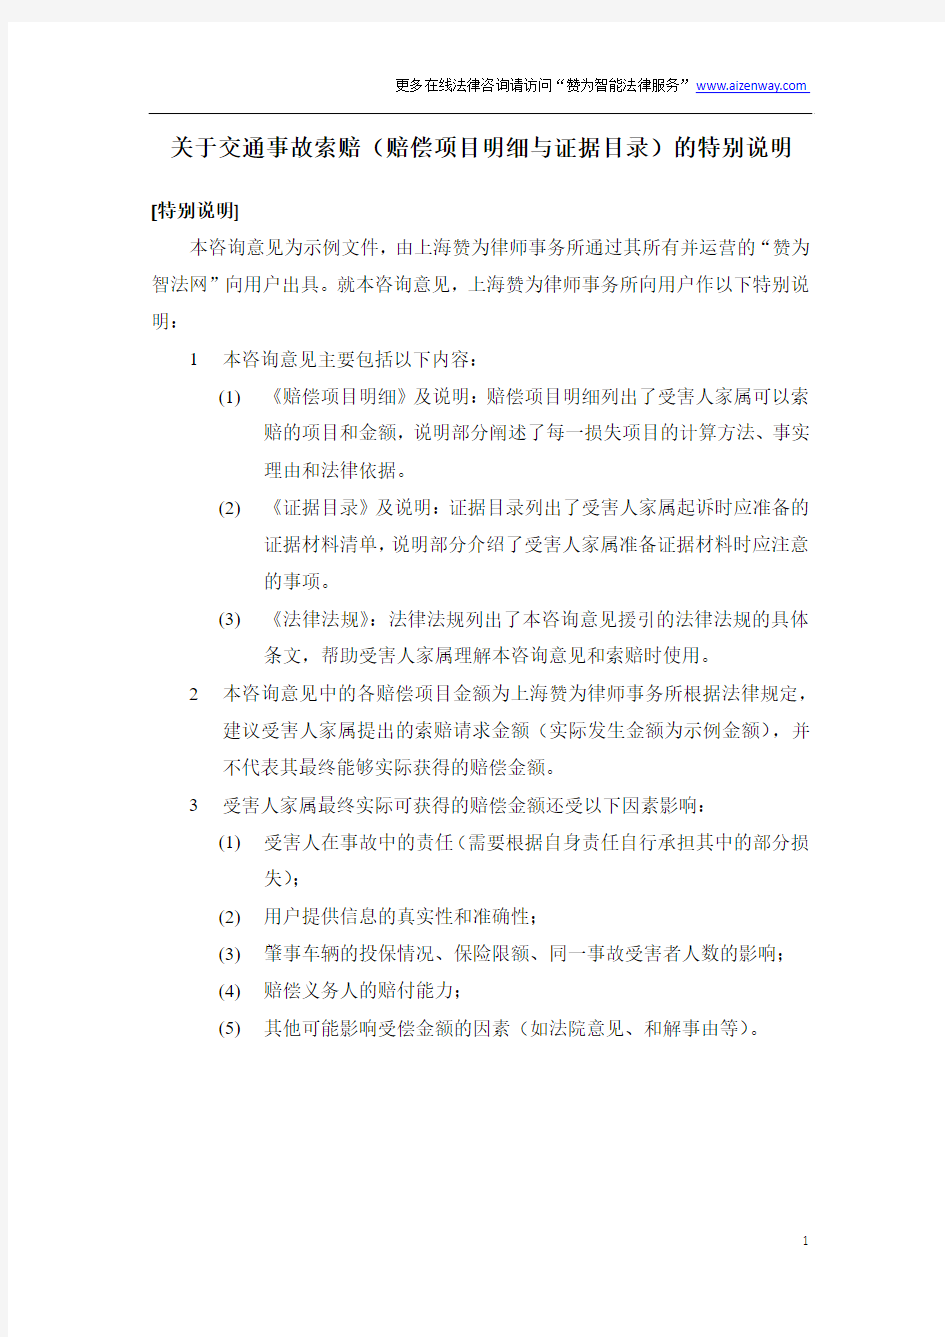 2015年河北省交通事故赔偿项目明细+证据目录+法律分析(城镇居民死亡示例)